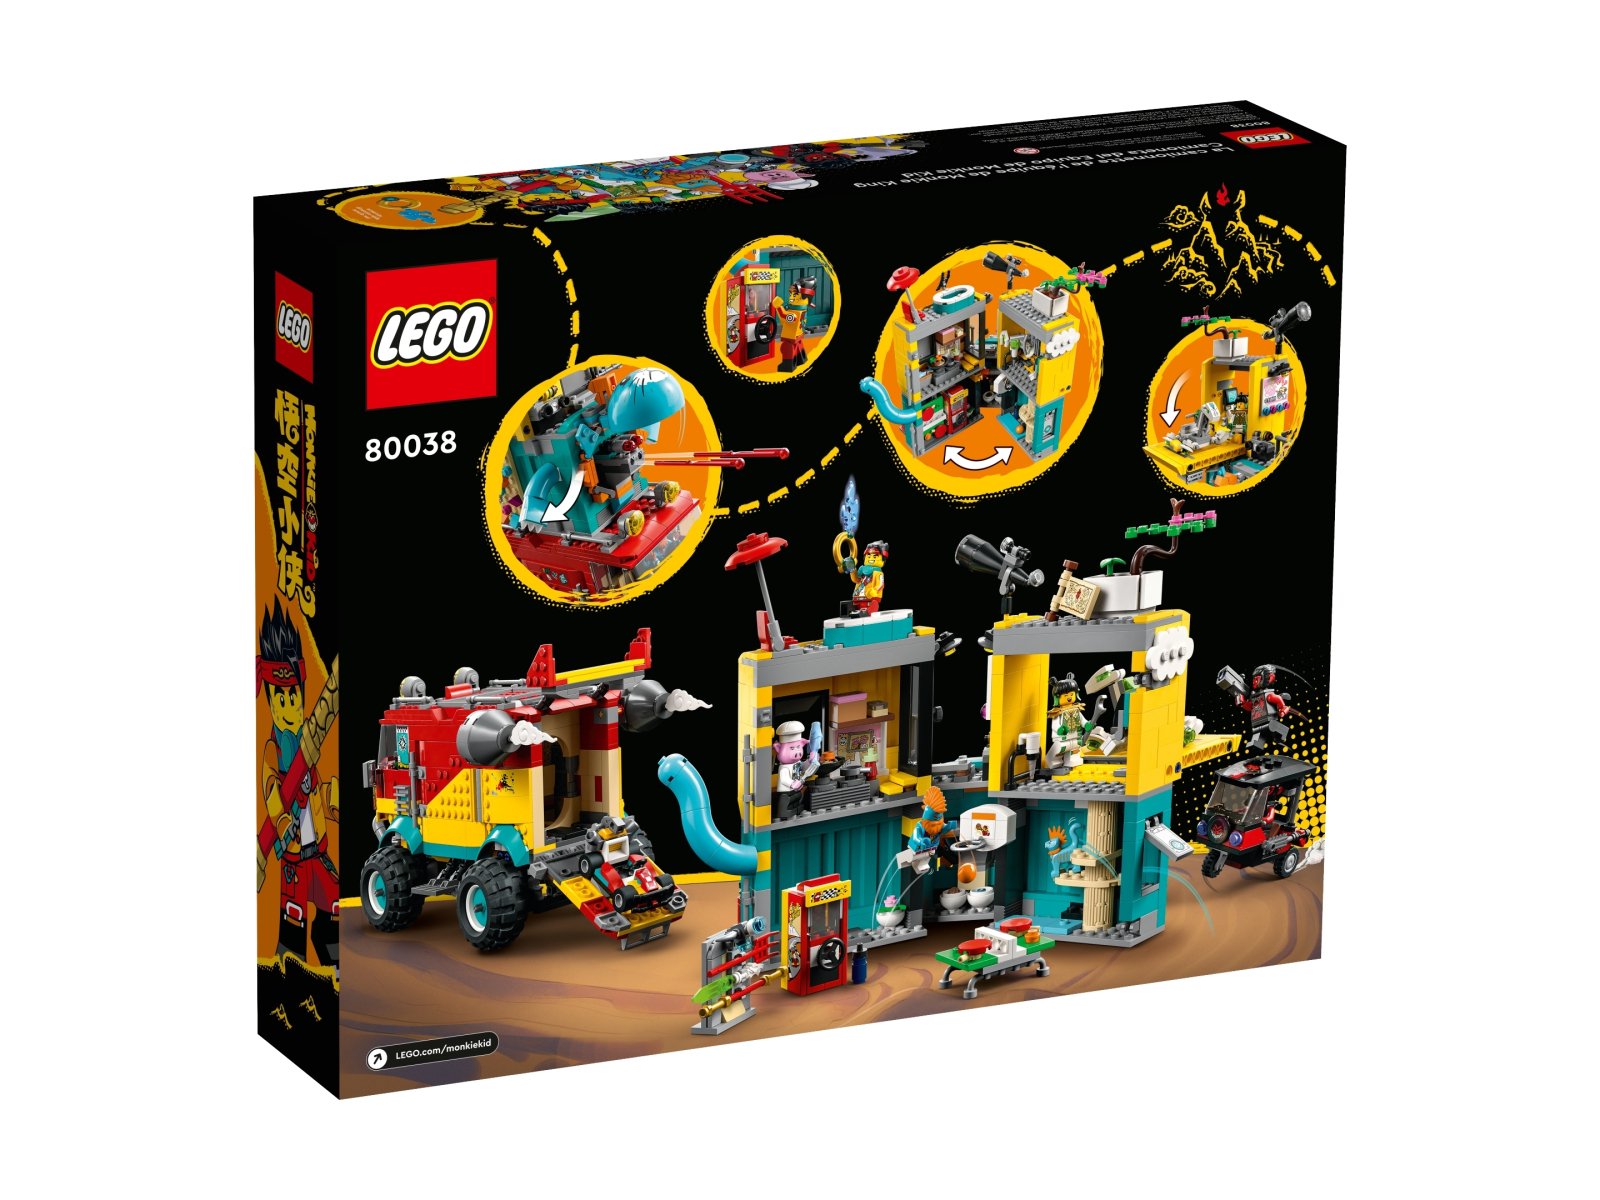 LEGO Monkie Kid Furgonetka ekipy Monkie Kida 80038